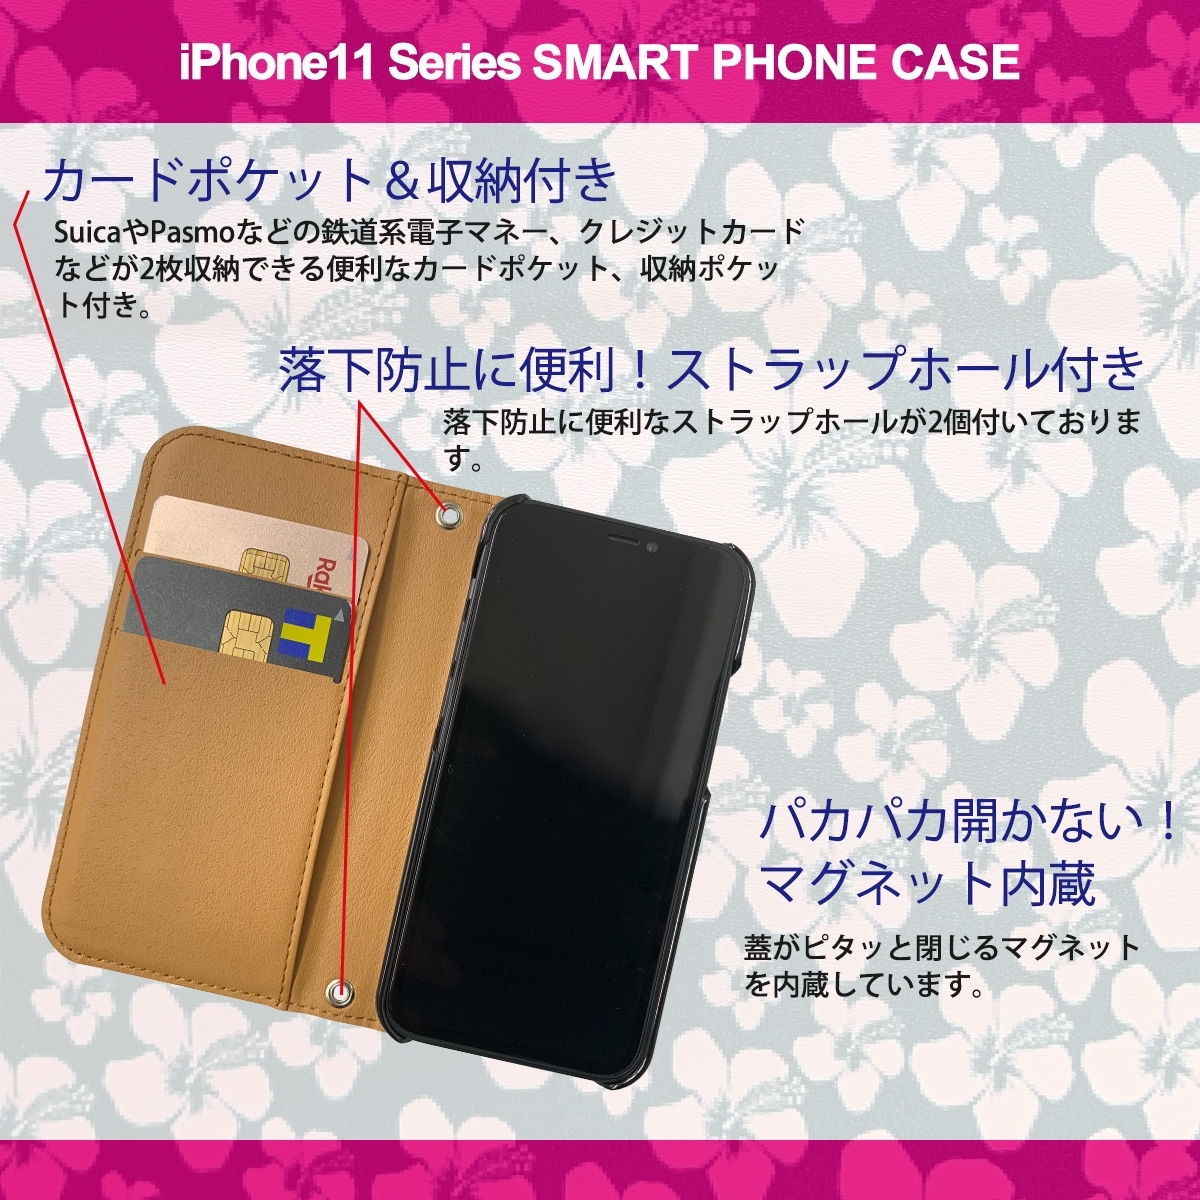 1】 iPhone11 Pro Max 手帳型 アイフォン ケース スマホカバー PVC レザー ハイビスカス ピンク イエロー